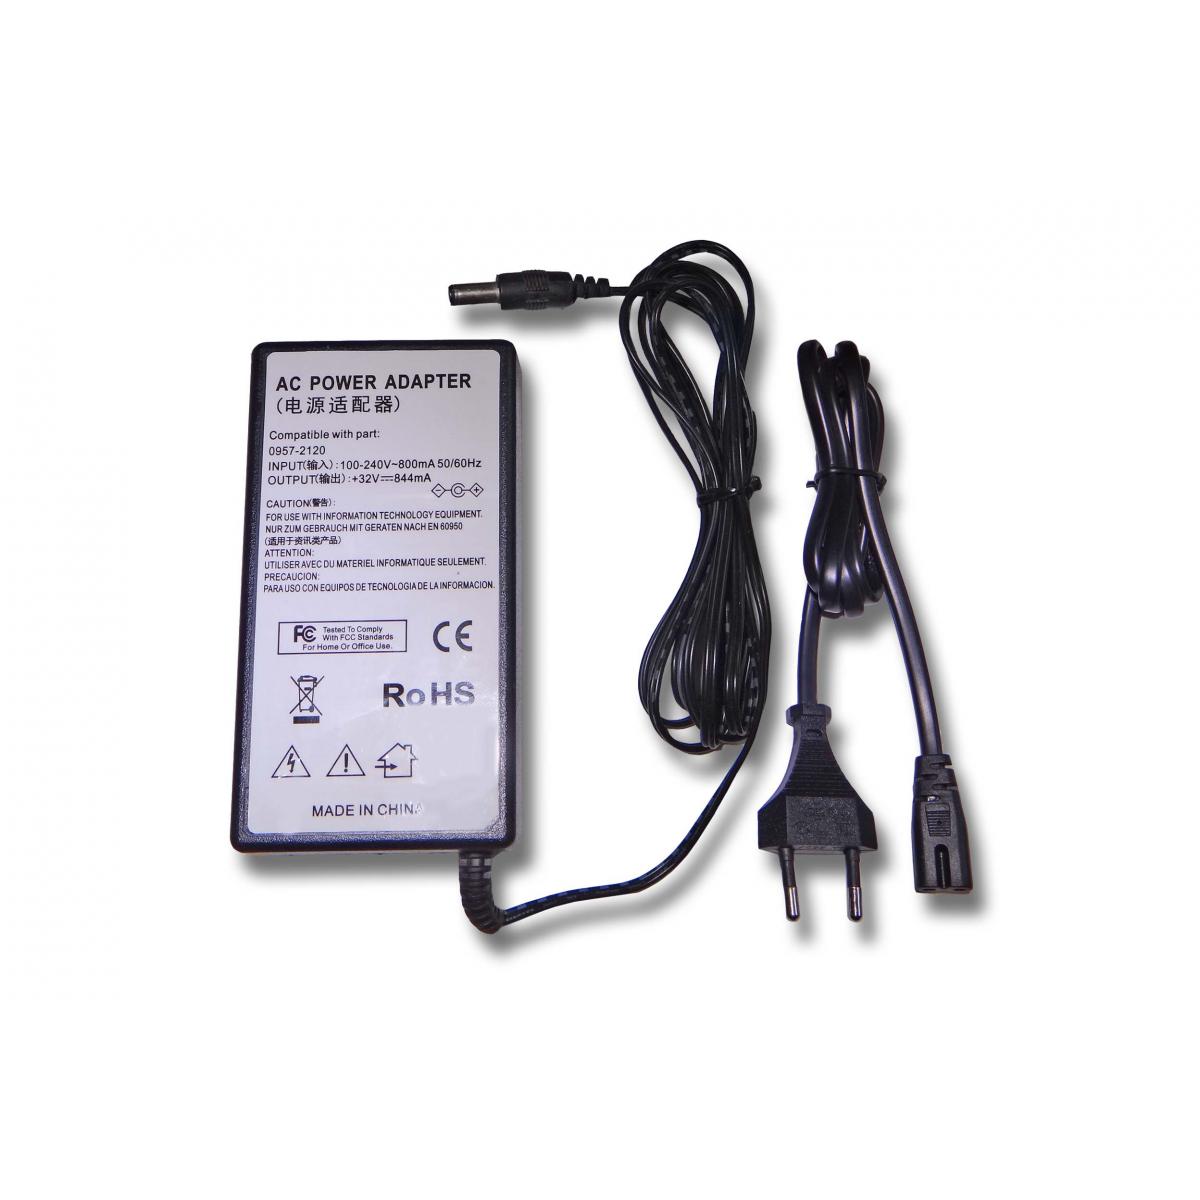 Vhbw - vhbw Imprimante Adaptateur bloc d'alimentation Câble d'alimentation Chargeur remplace HP 0957-2120 pour imprimante - 0.844A - Accessoires alimentation